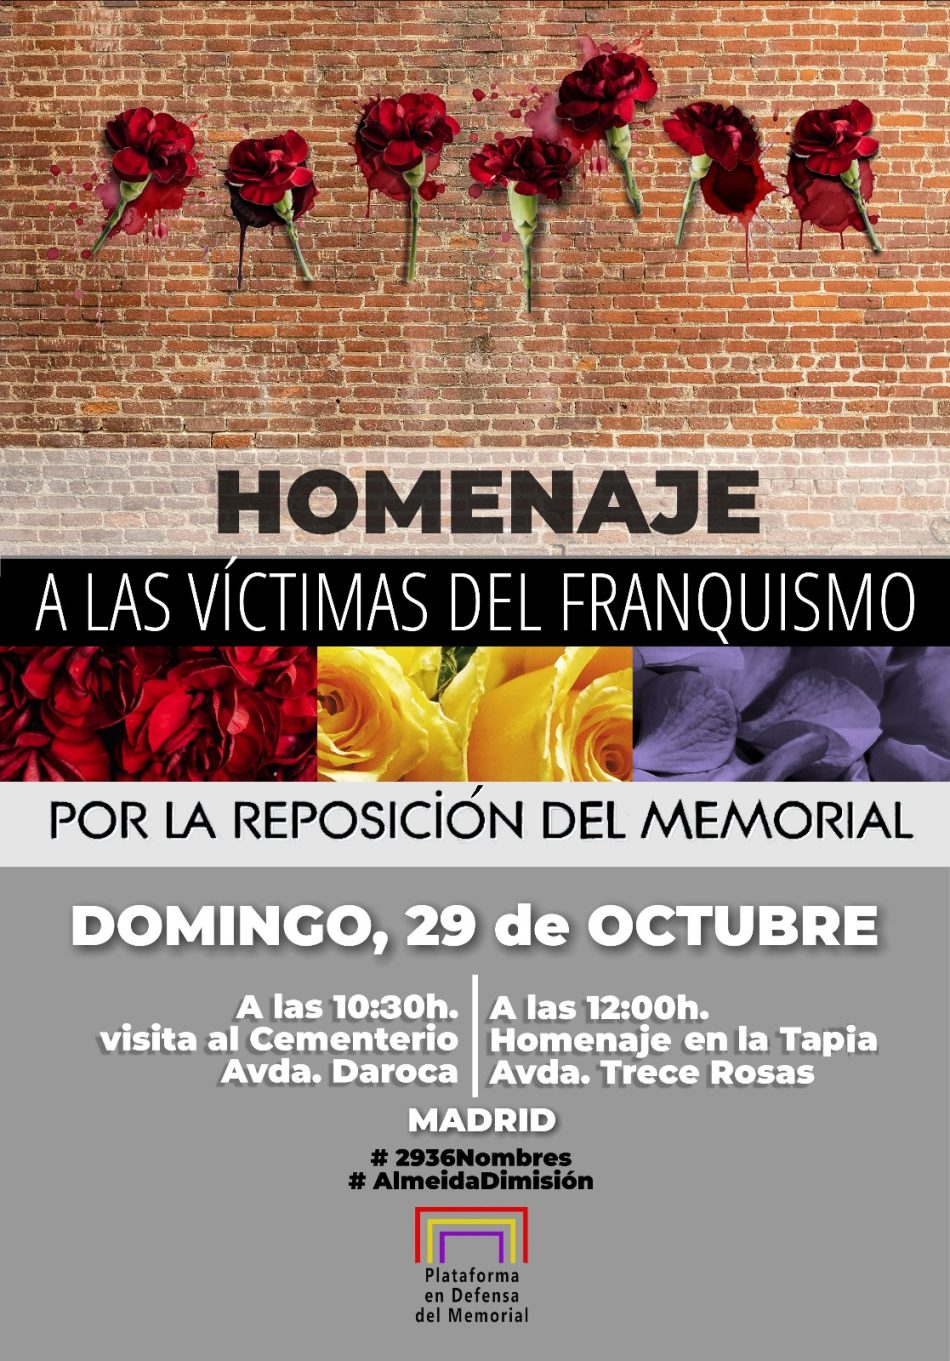 Homenaje a las víctimas del Franquismo. Por la reposición del Memorial del cementerio de la Almudena: 29 Oct.